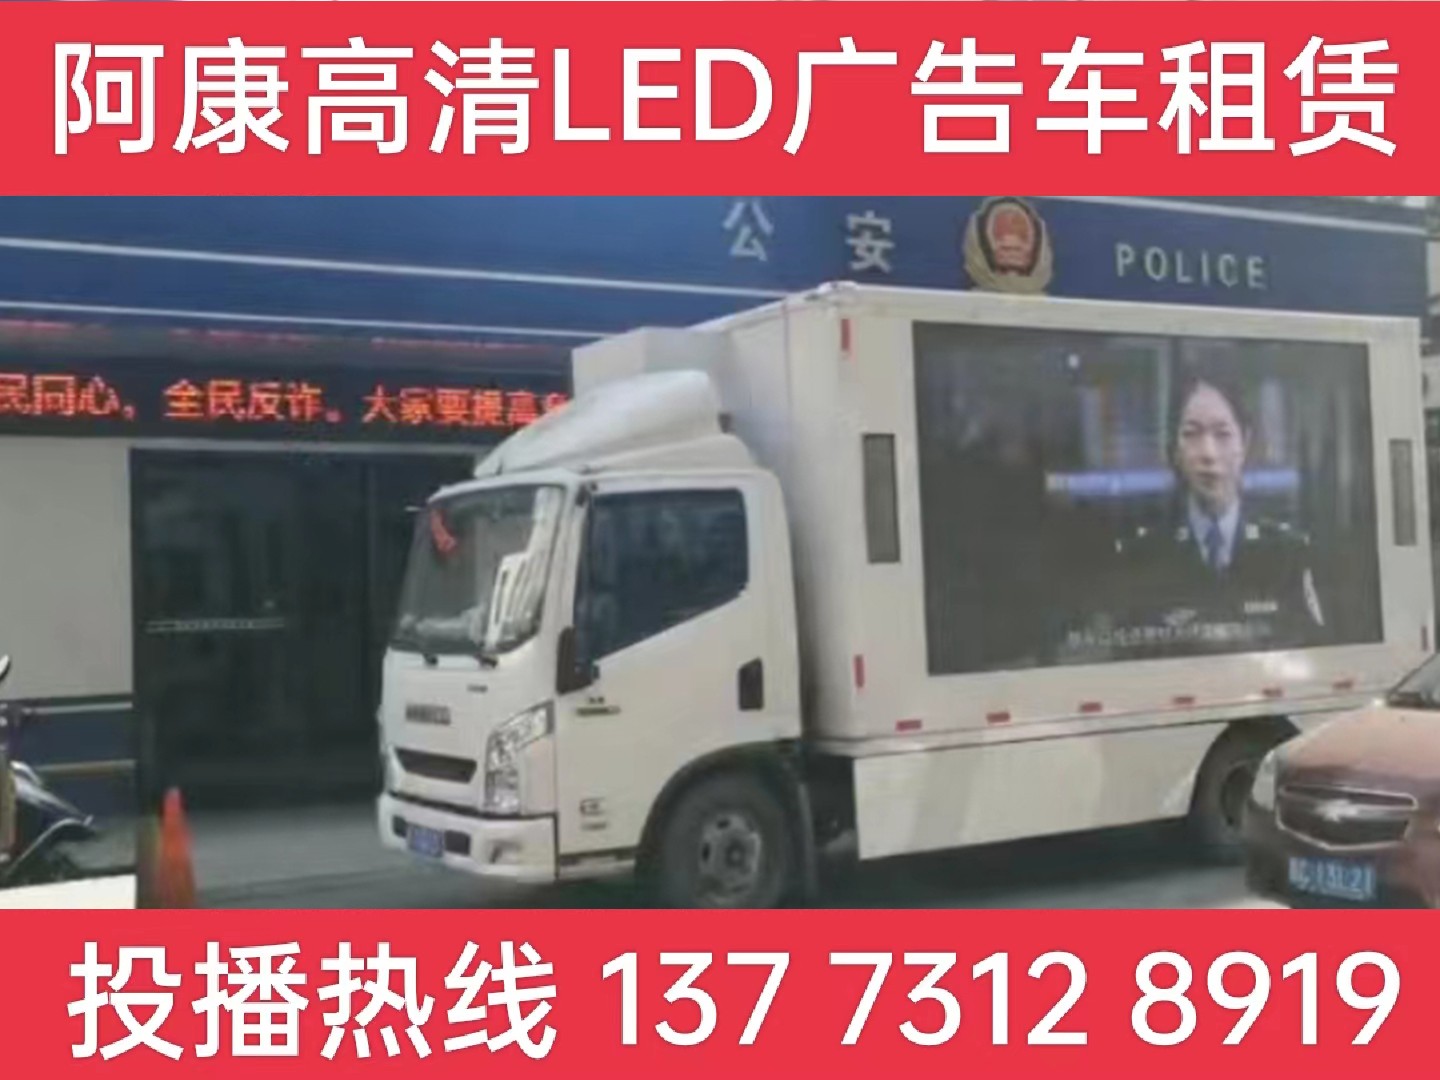 天长LED广告车租赁-反诈宣传